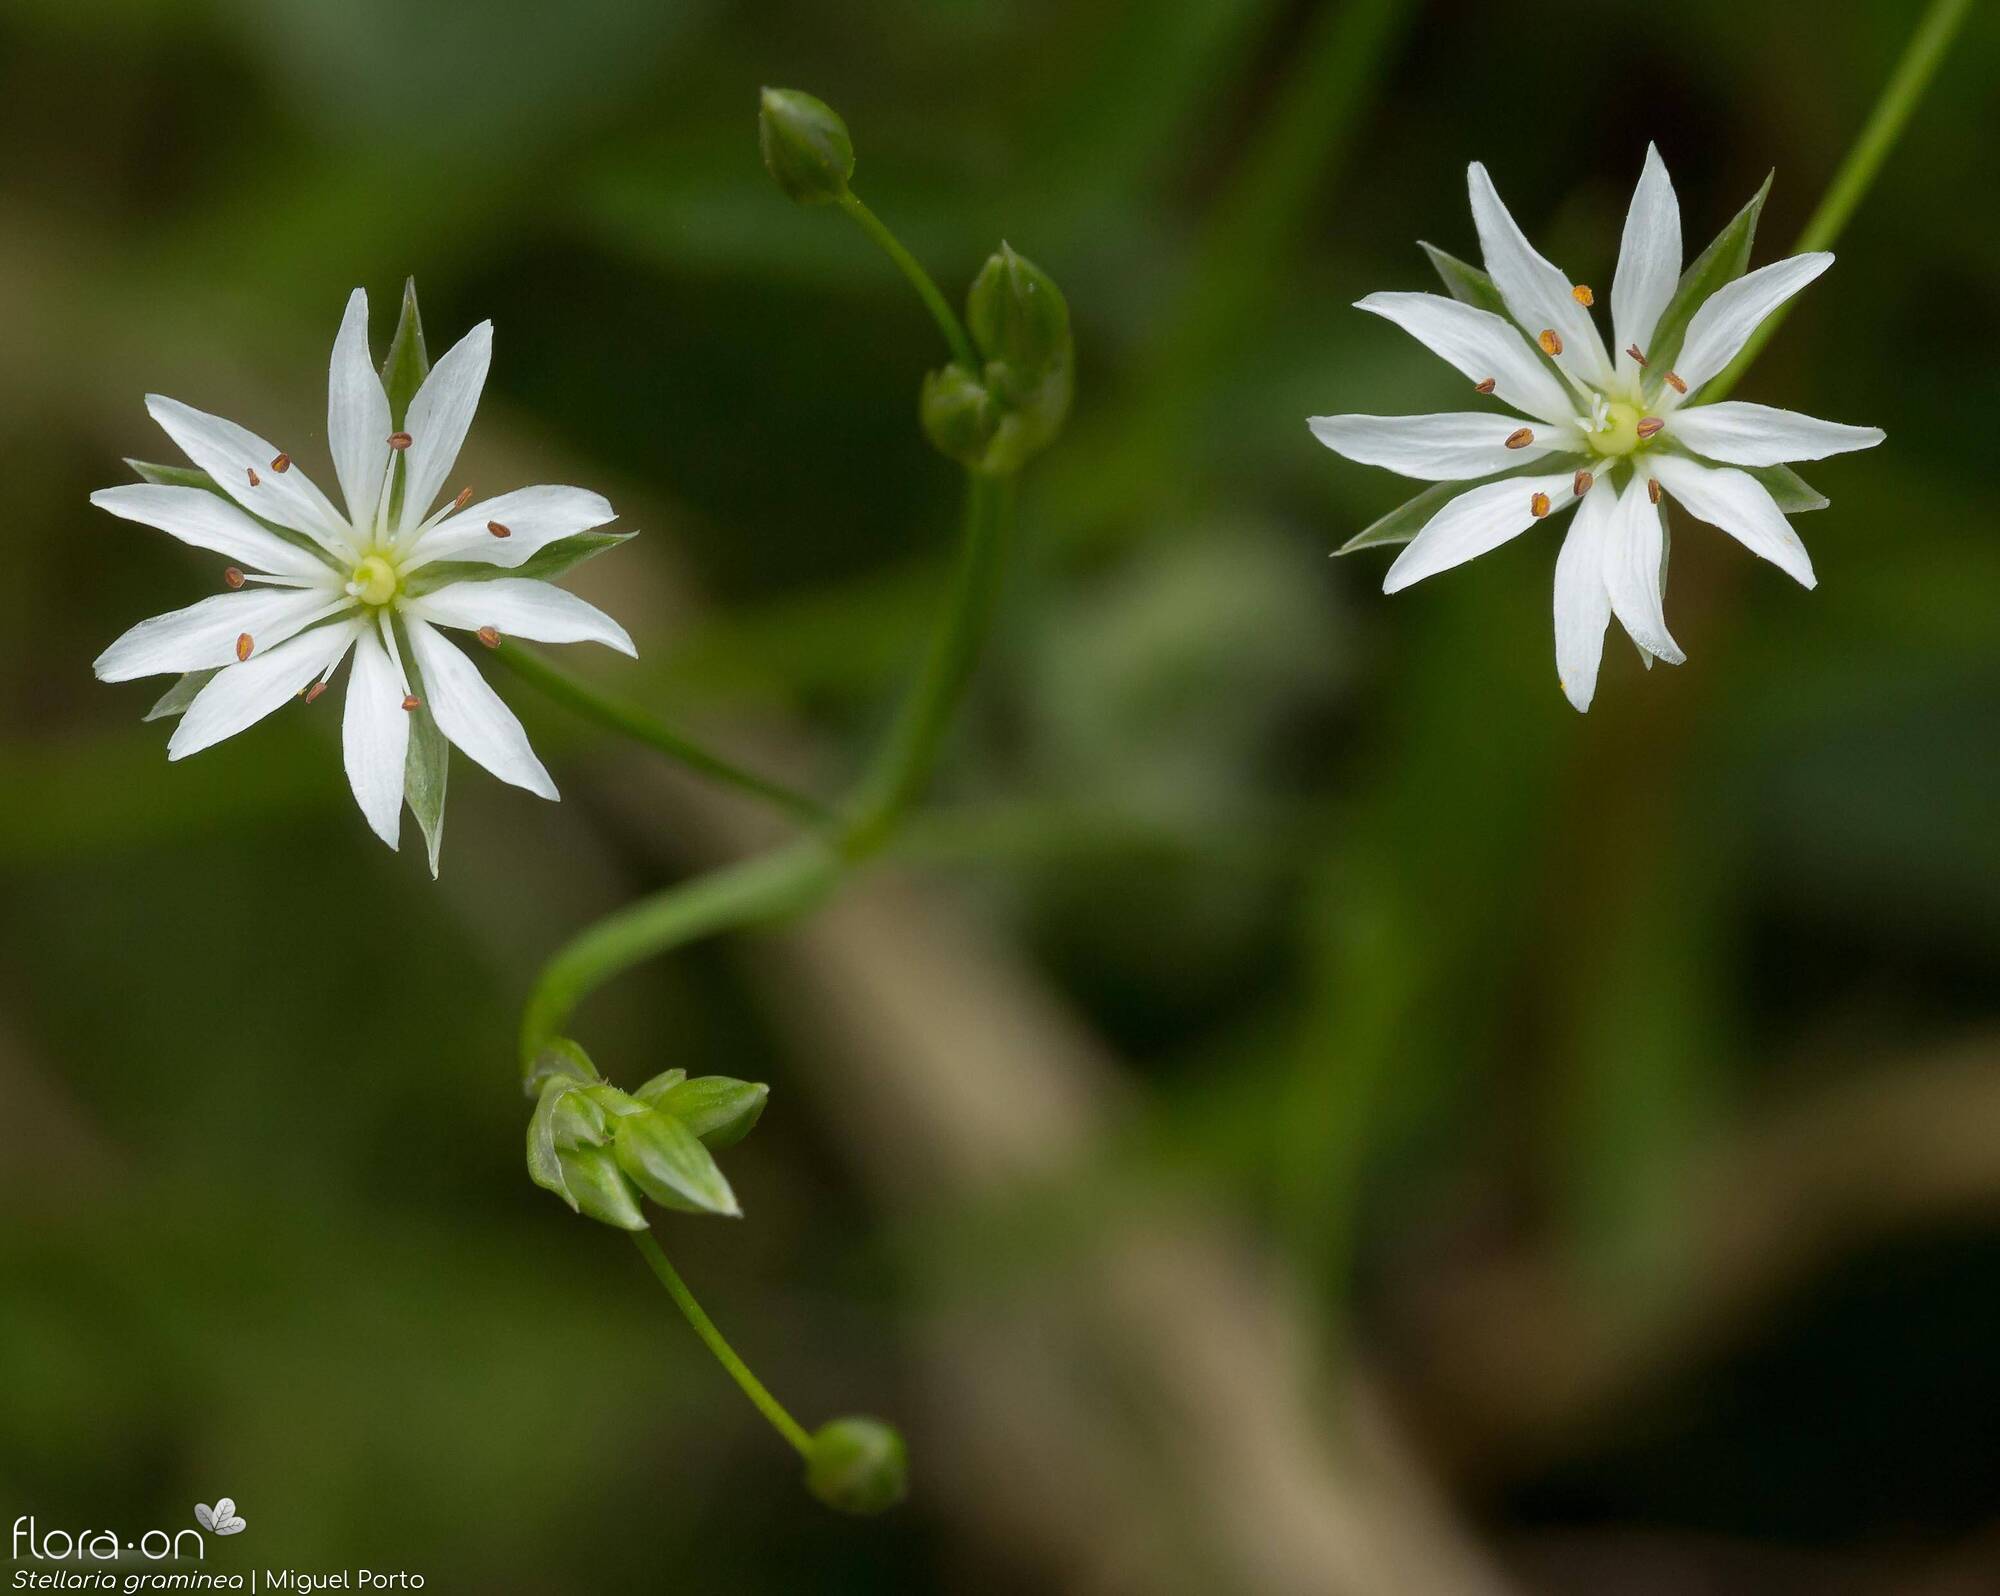 Stellaria graminea - Flor (geral) | Miguel Porto; CC BY-NC 4.0